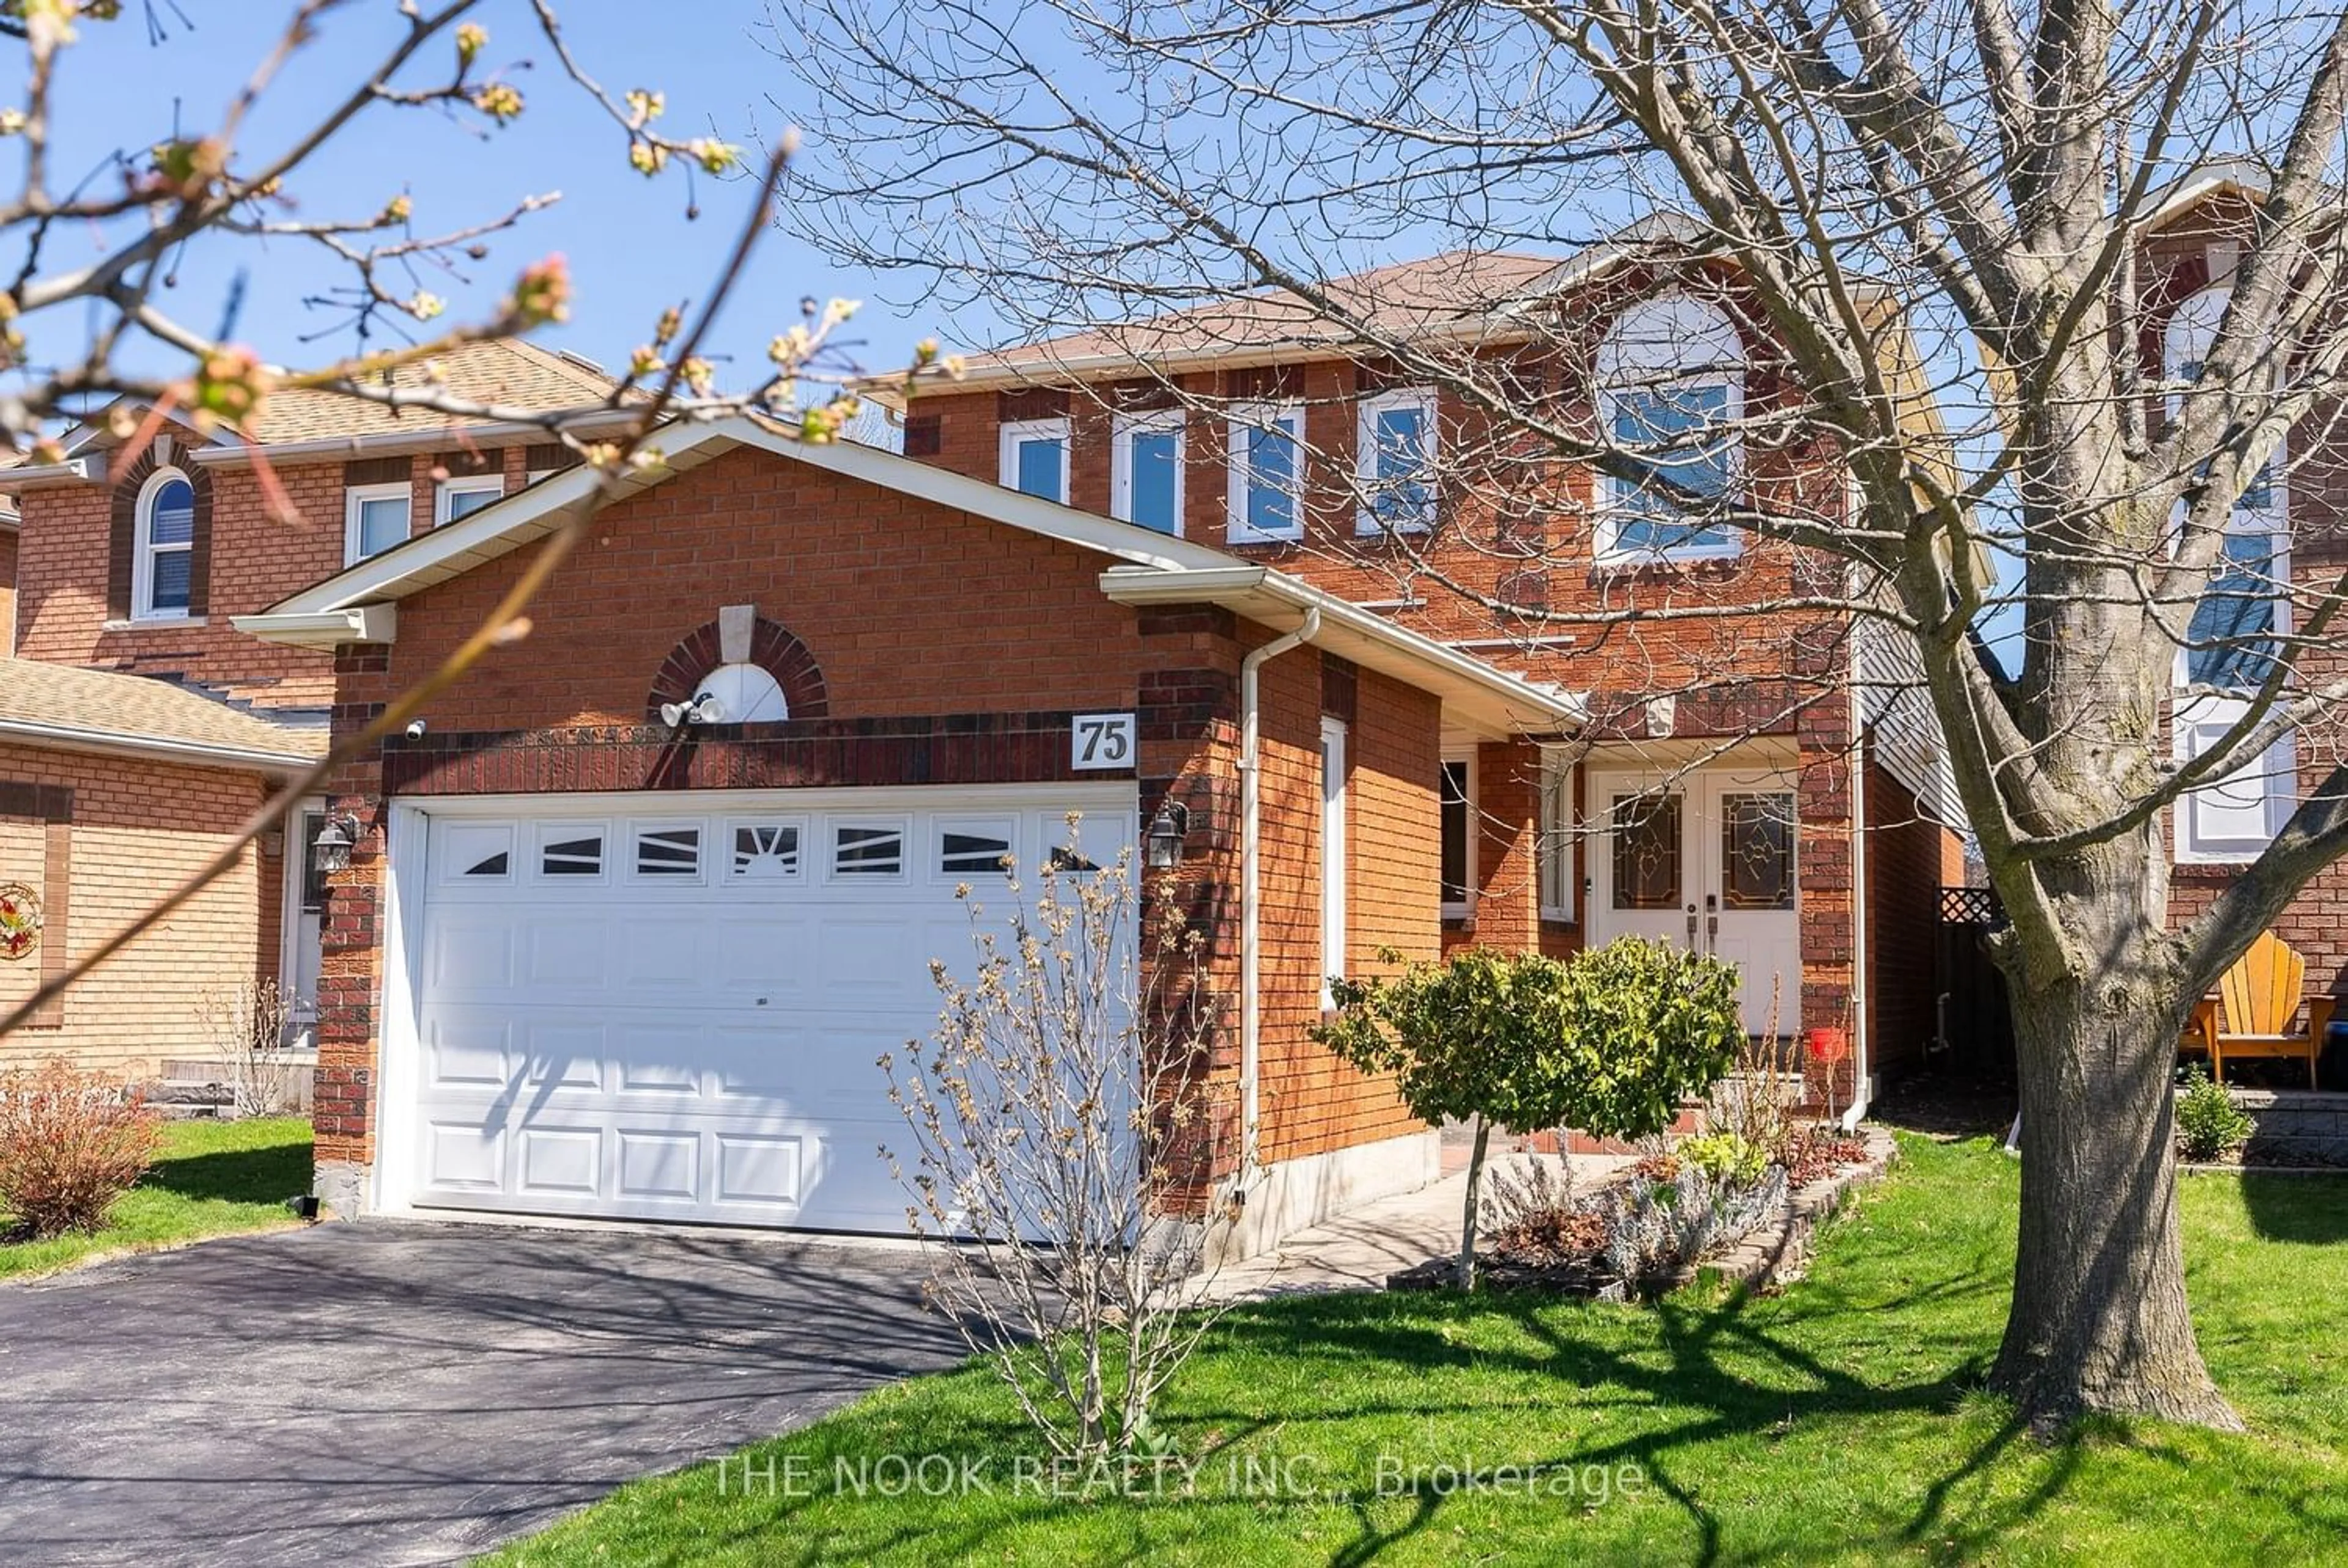 Home with brick exterior material for 75 Oke Rd, Clarington Ontario L1E 2V1